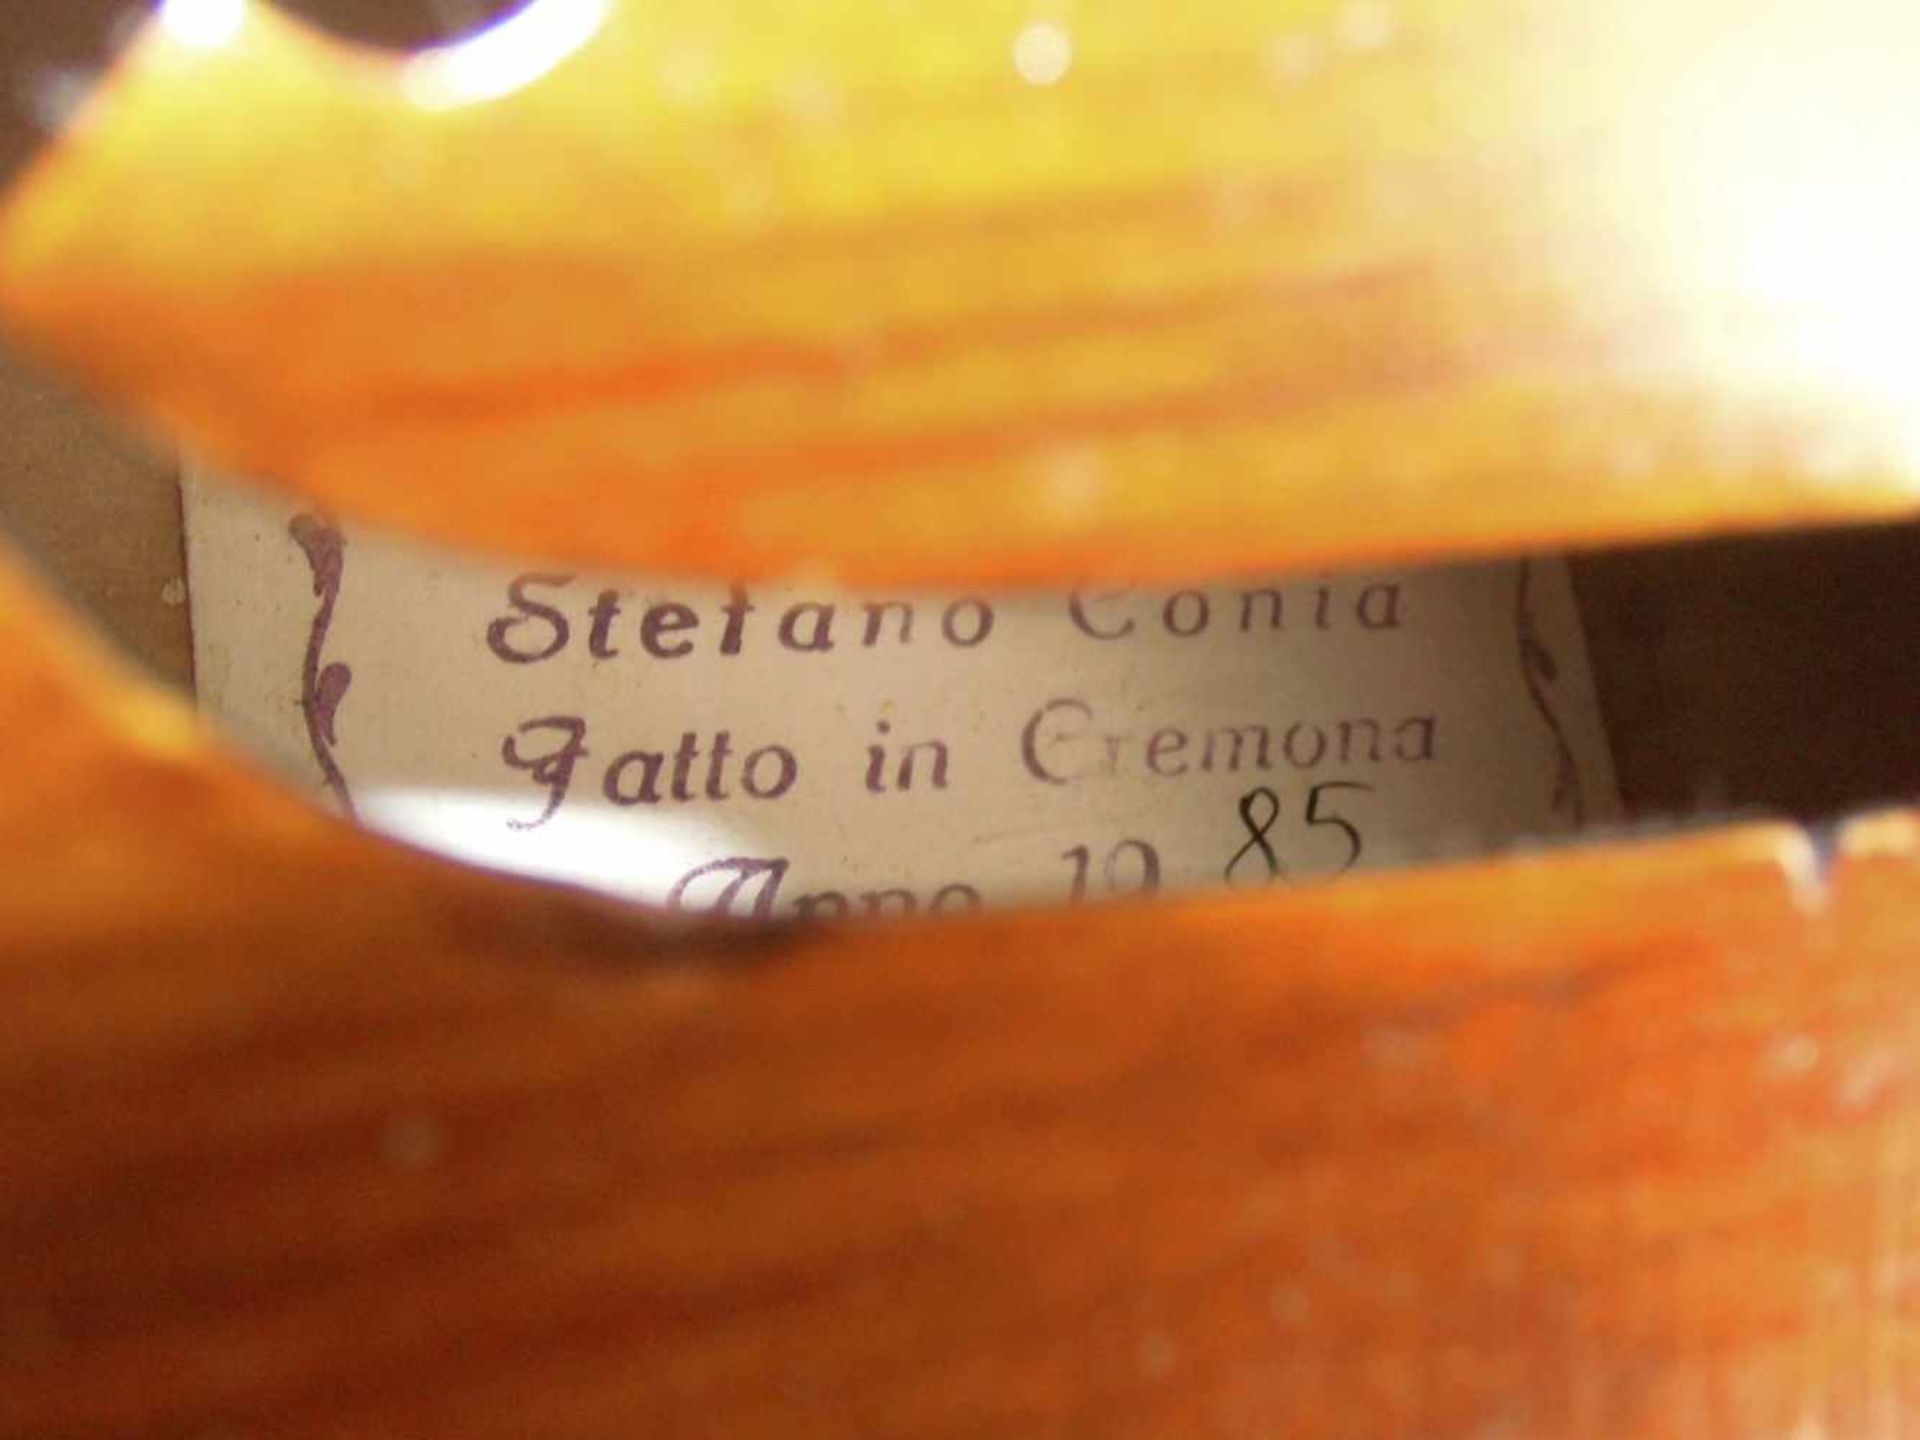 BRATSCHE / VIOLA, Cremona / Italien, Meister / Geigenbauer Stefano Conia, Bratsche gefertigt 1985. - Bild 14 aus 17